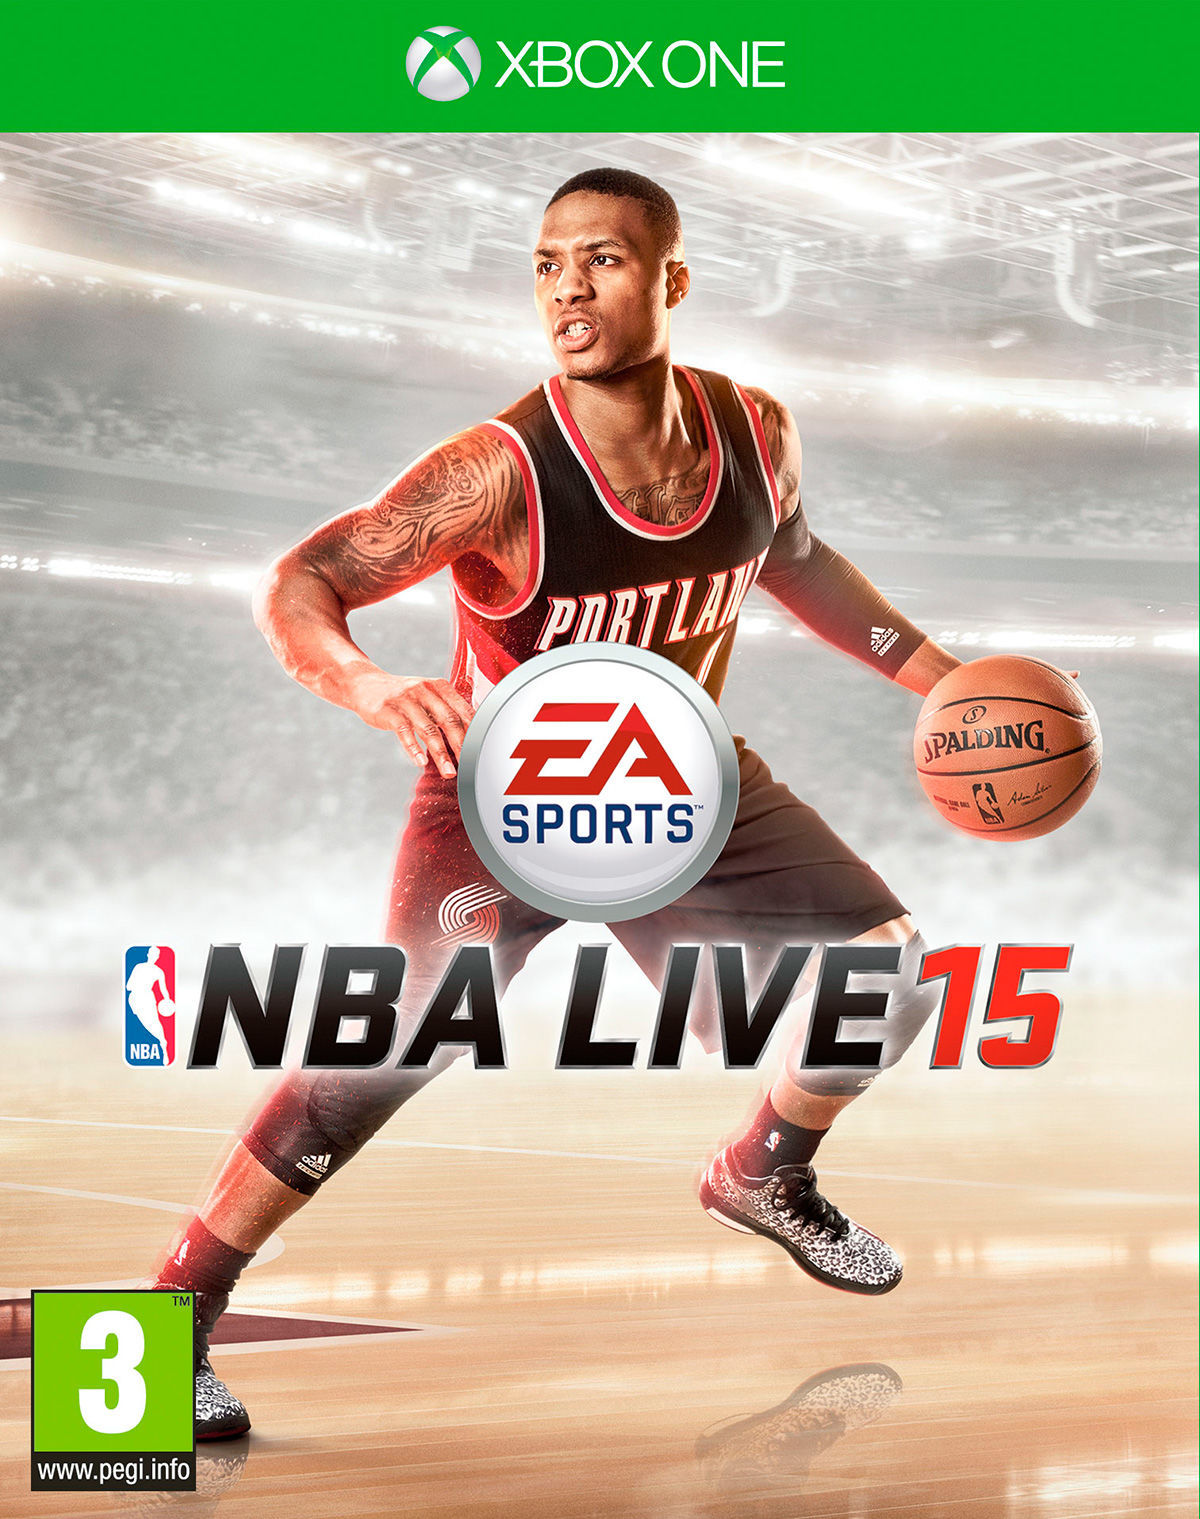 Damian Lillard protagonista de la portada de NBA LIVE 15